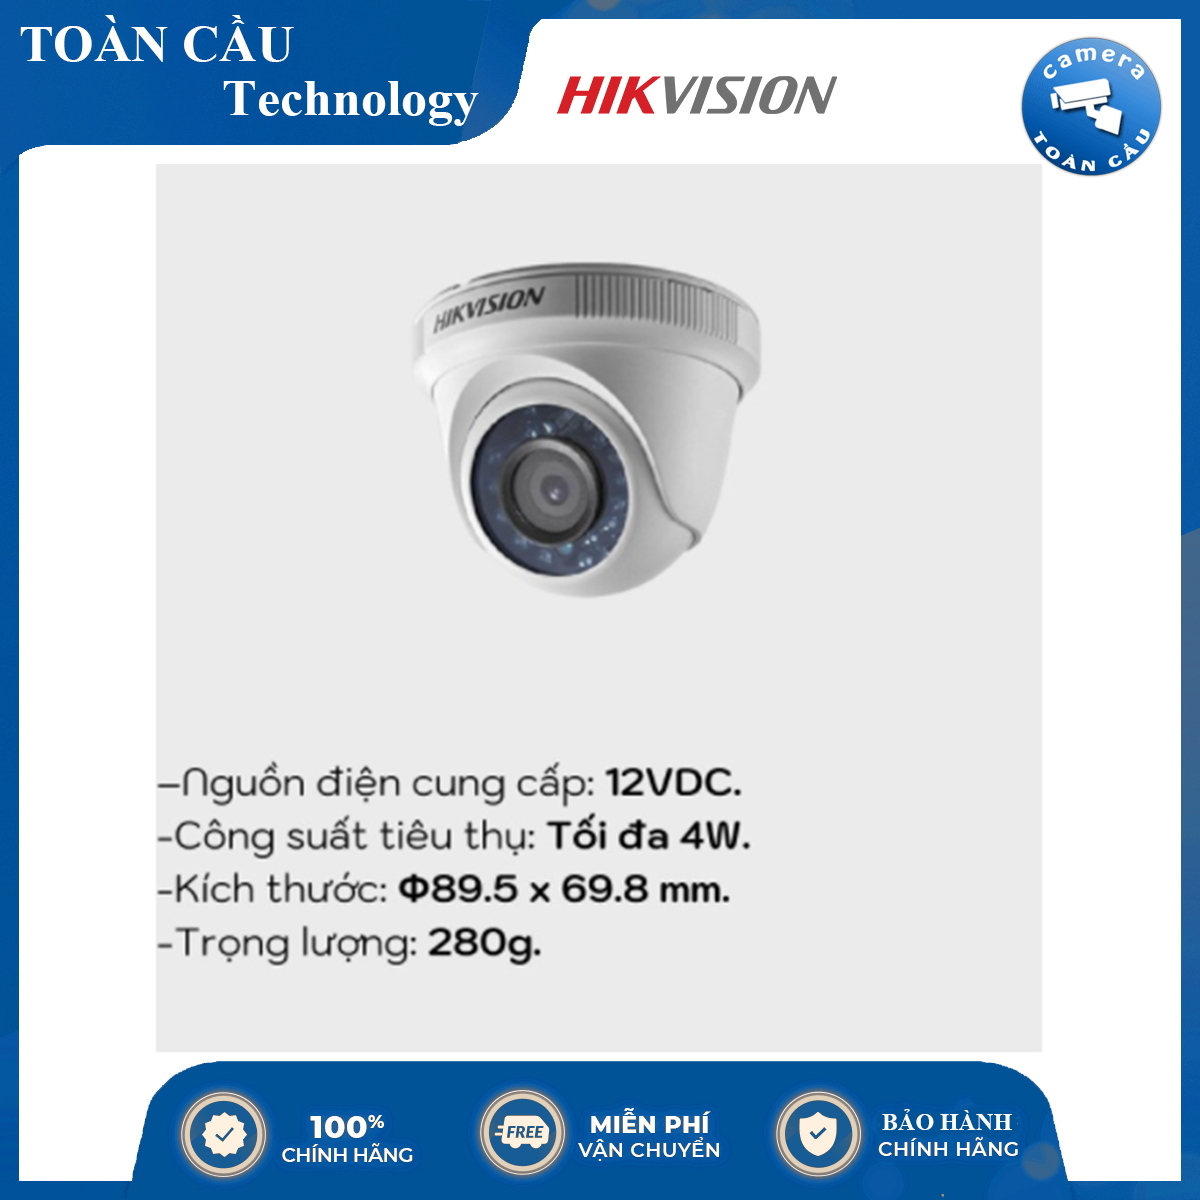 [100% CHÍNH HÃNG] Camera hồng ngoại thông minh HD-TVI Hikvision DS-2CE56D0T-IRP hồng ngoại 20m 2MP HD1080p, cảm biến CMOS 2Mp...